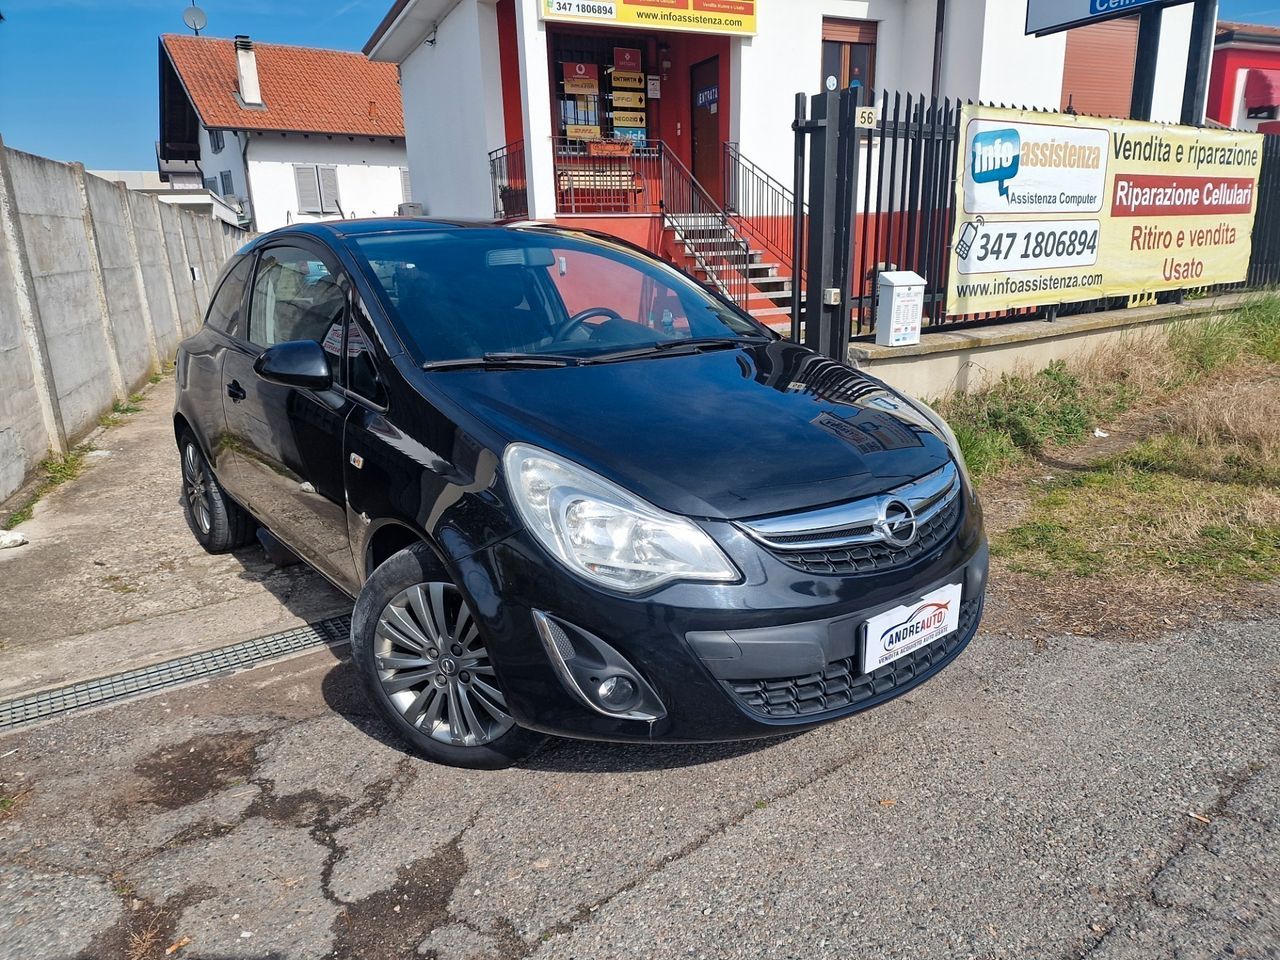 Opel Corsa 1.2 3 PORTE EDITION PER NEOPATENTATI